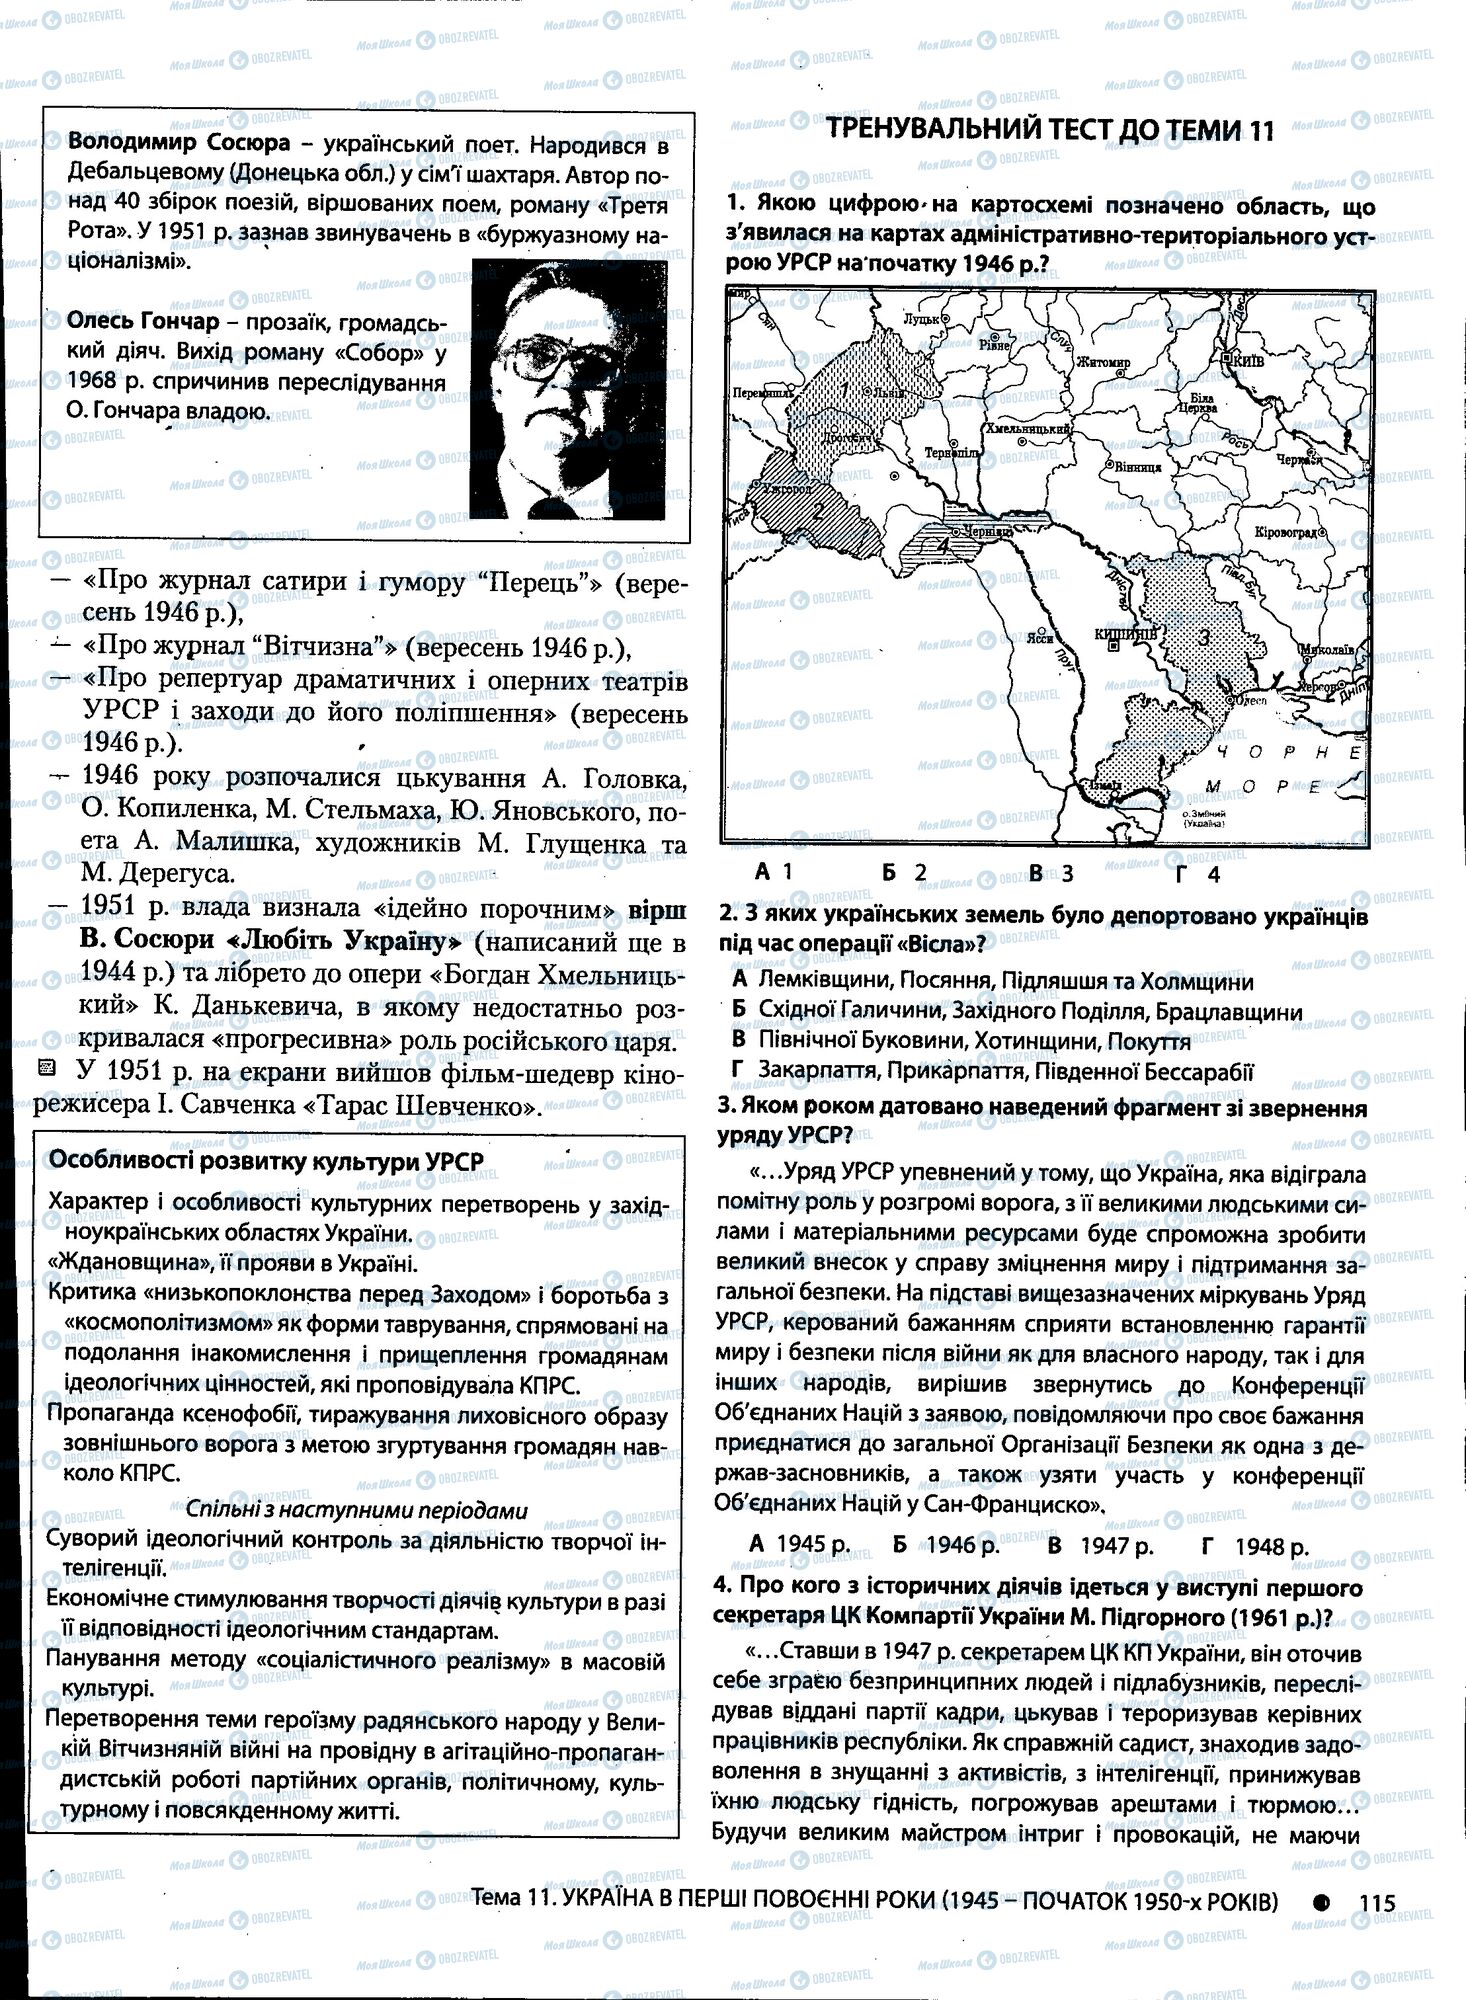 ДПА История Украины 11 класс страница 115